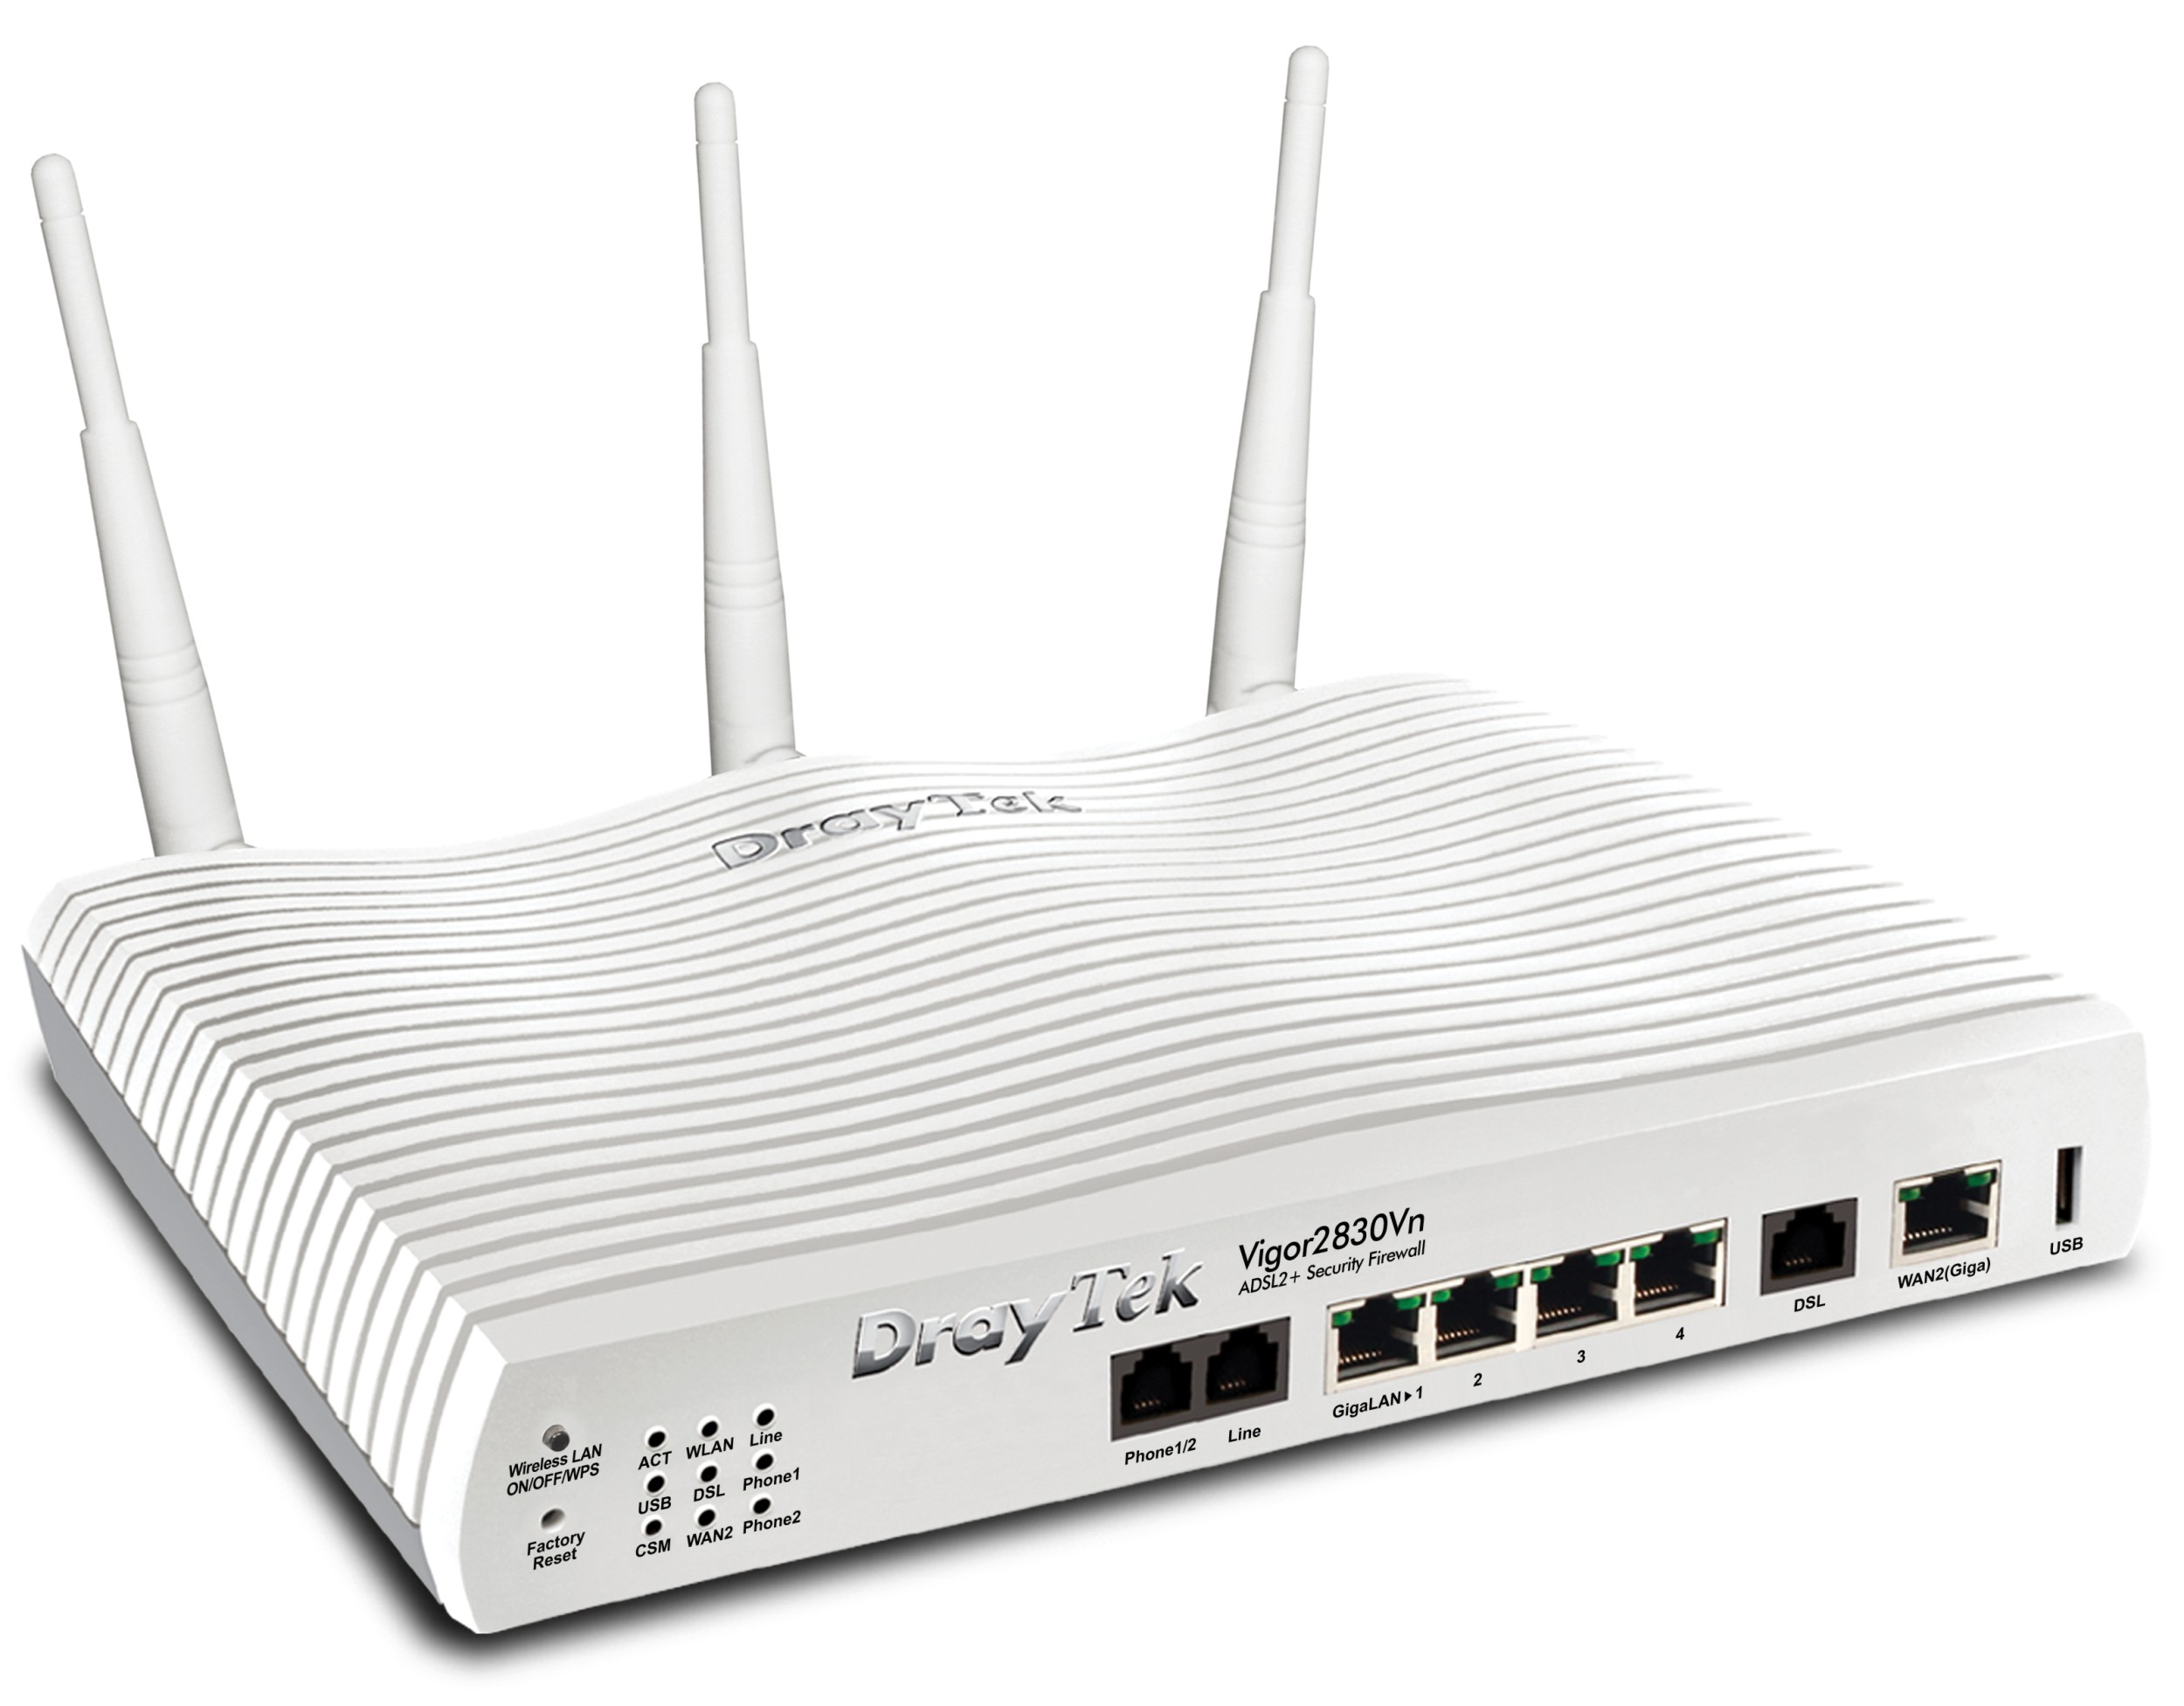 DrayTek Vigor 2830n_V2 Wireless Gigabit LAN WAN ADSL2+ Firewall